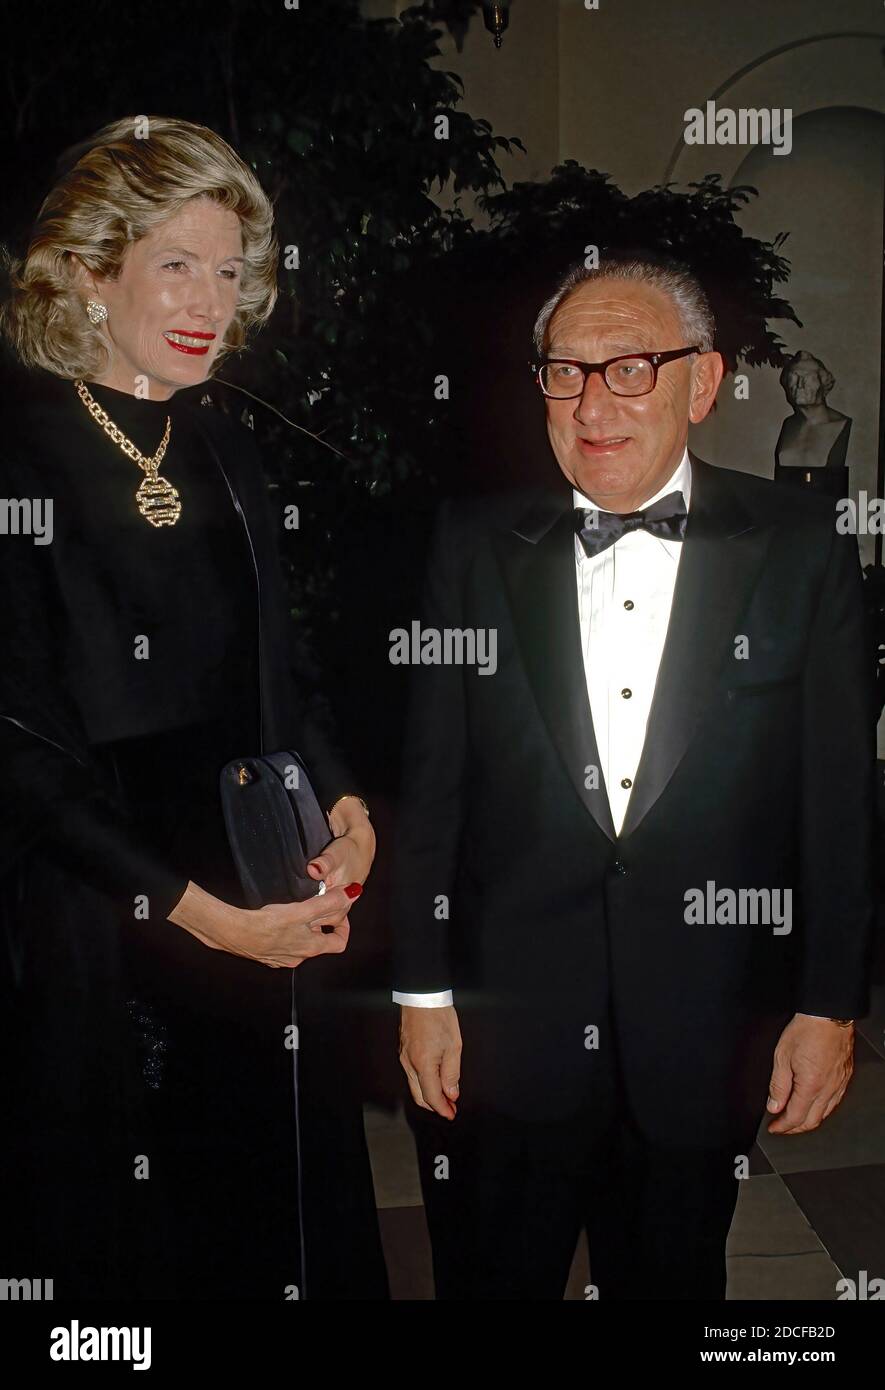 Washington DC, USA, 16. November 1988Der ehemalige Staatssekretär Henry Kissinger und seine Frau Nancy kommen im Weißen Haus an, um an dem Staatsessen zu Ehren von Premierministerin Margaret Thatcher teilzunehmen.Quelle: Mark Reinstein/MediaPunch Stockfoto